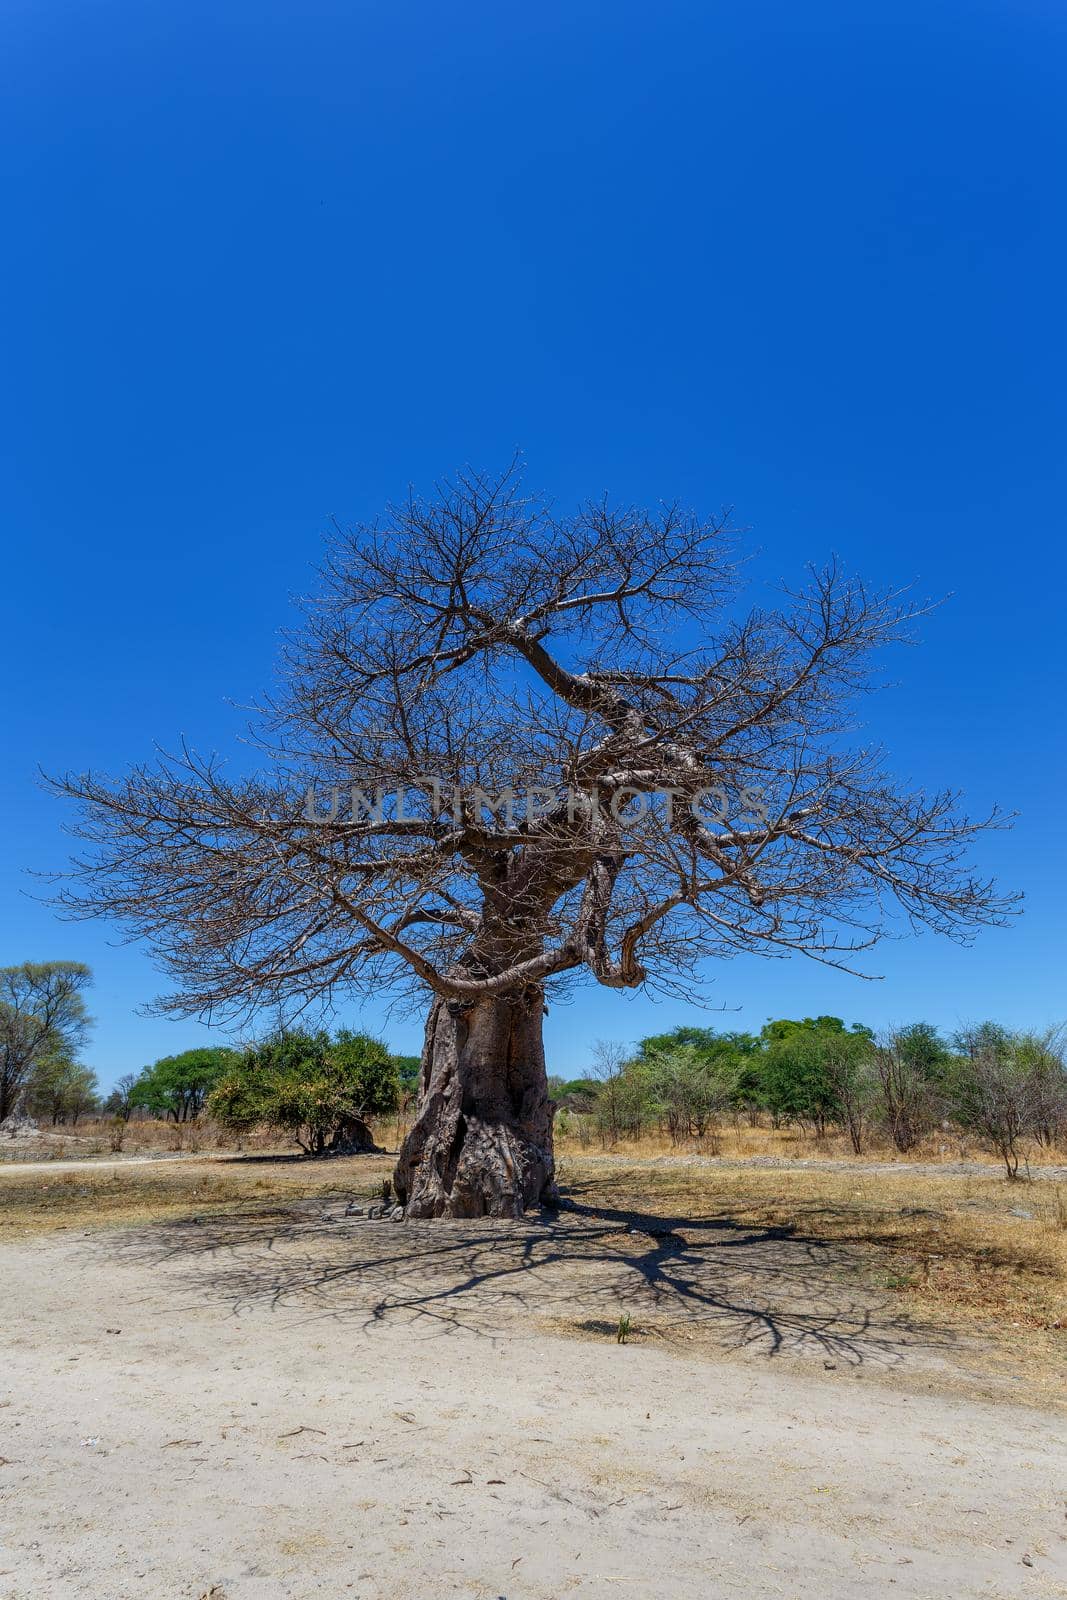 majestic old baobab tree against blue sky (Adansonia digitata) - Ngoma, Botswana Zimbabwe border